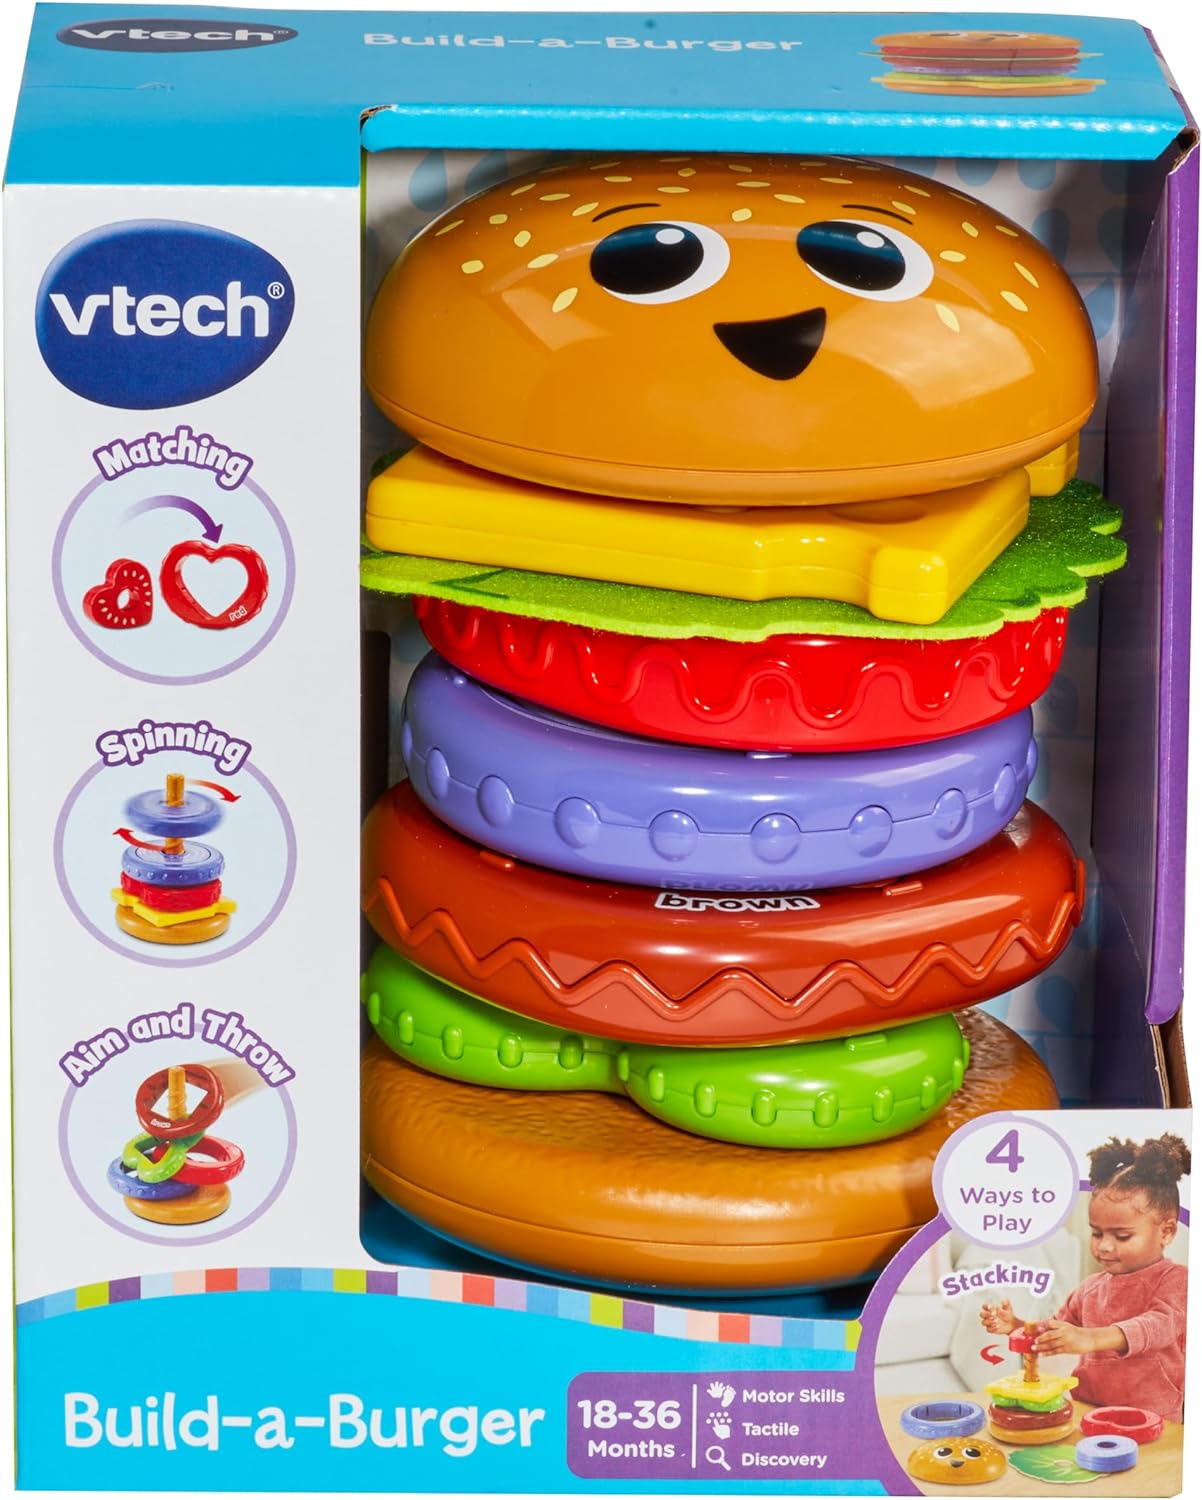 VTech Brinquedo para construir um hambúrguer, empilhar e classificar para bebês com 6 pedaços de comida, classificação de formas, brincadeira de empilhar, combinar, girar e cores, presente para bebês de 18, 24 meses ou mais, versão em inglês